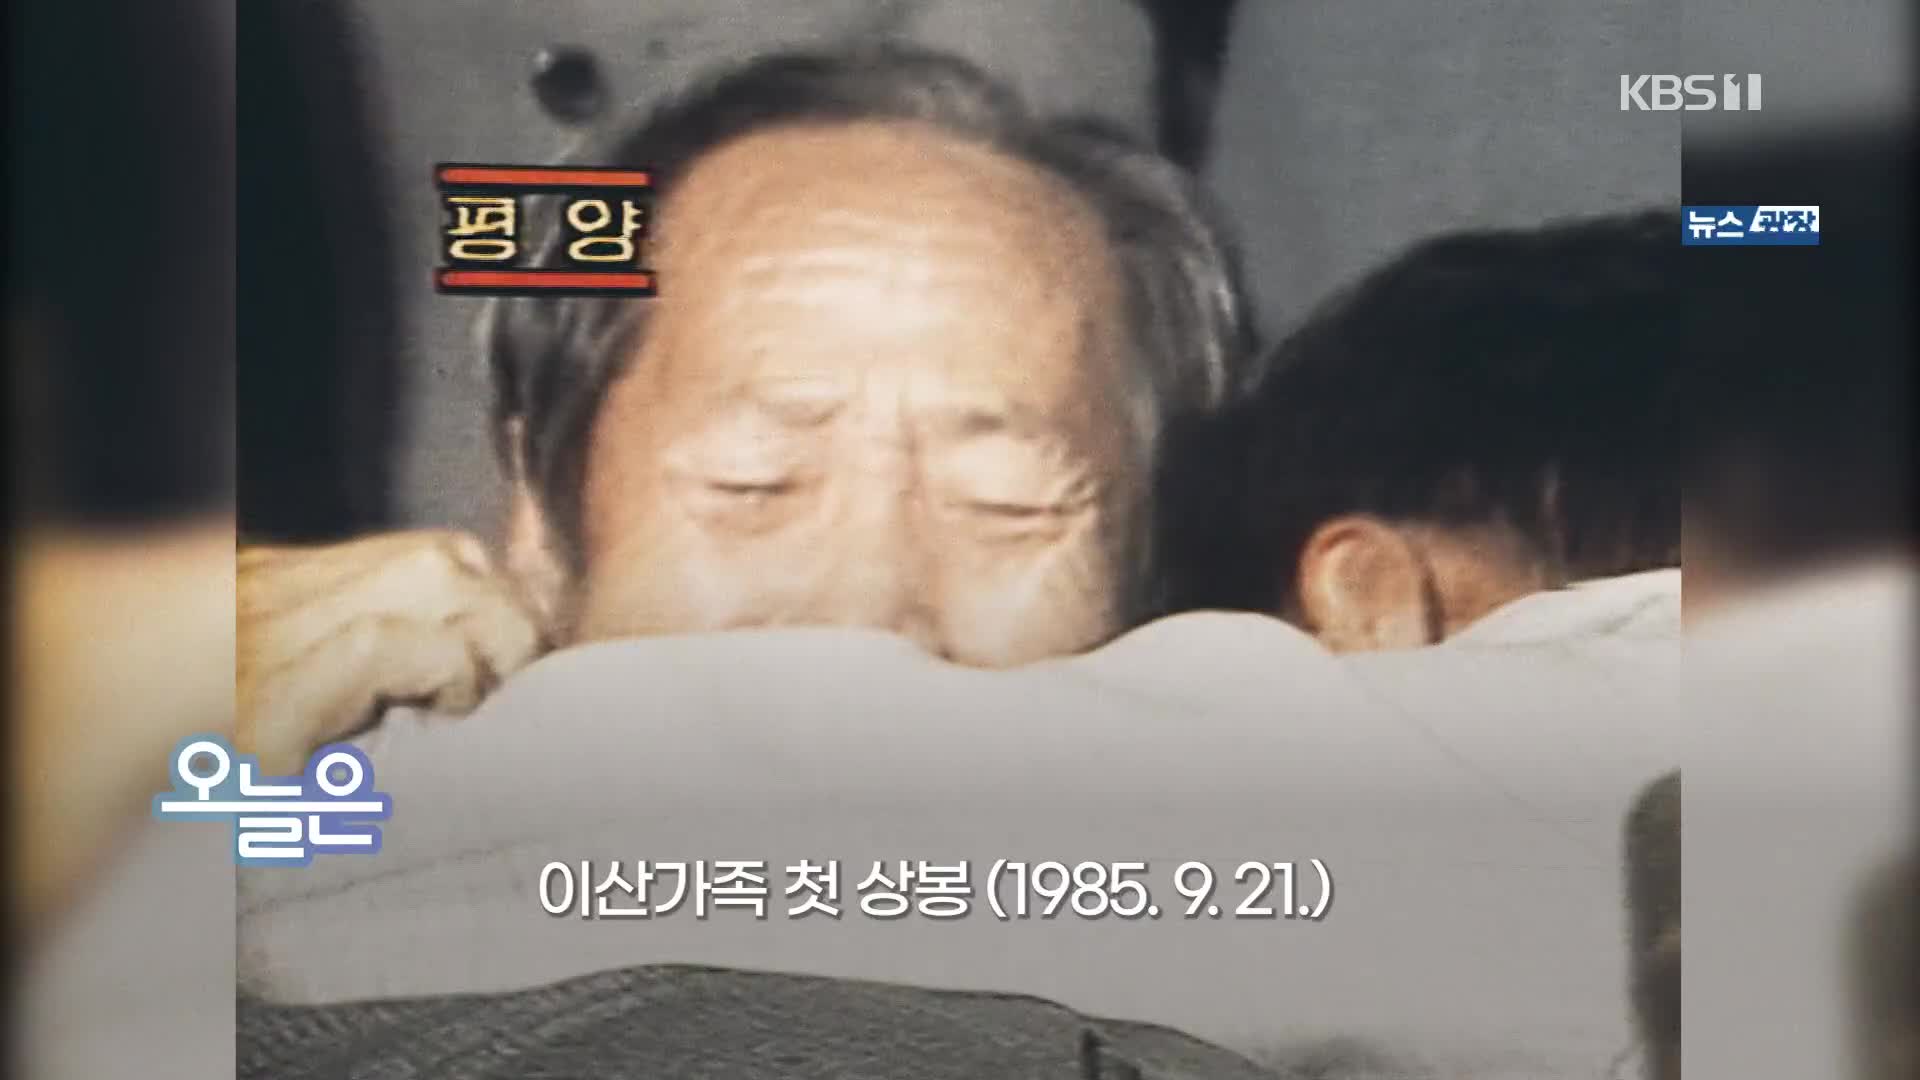 [오늘은] 이산가족 첫 상봉 (1985.9.21)